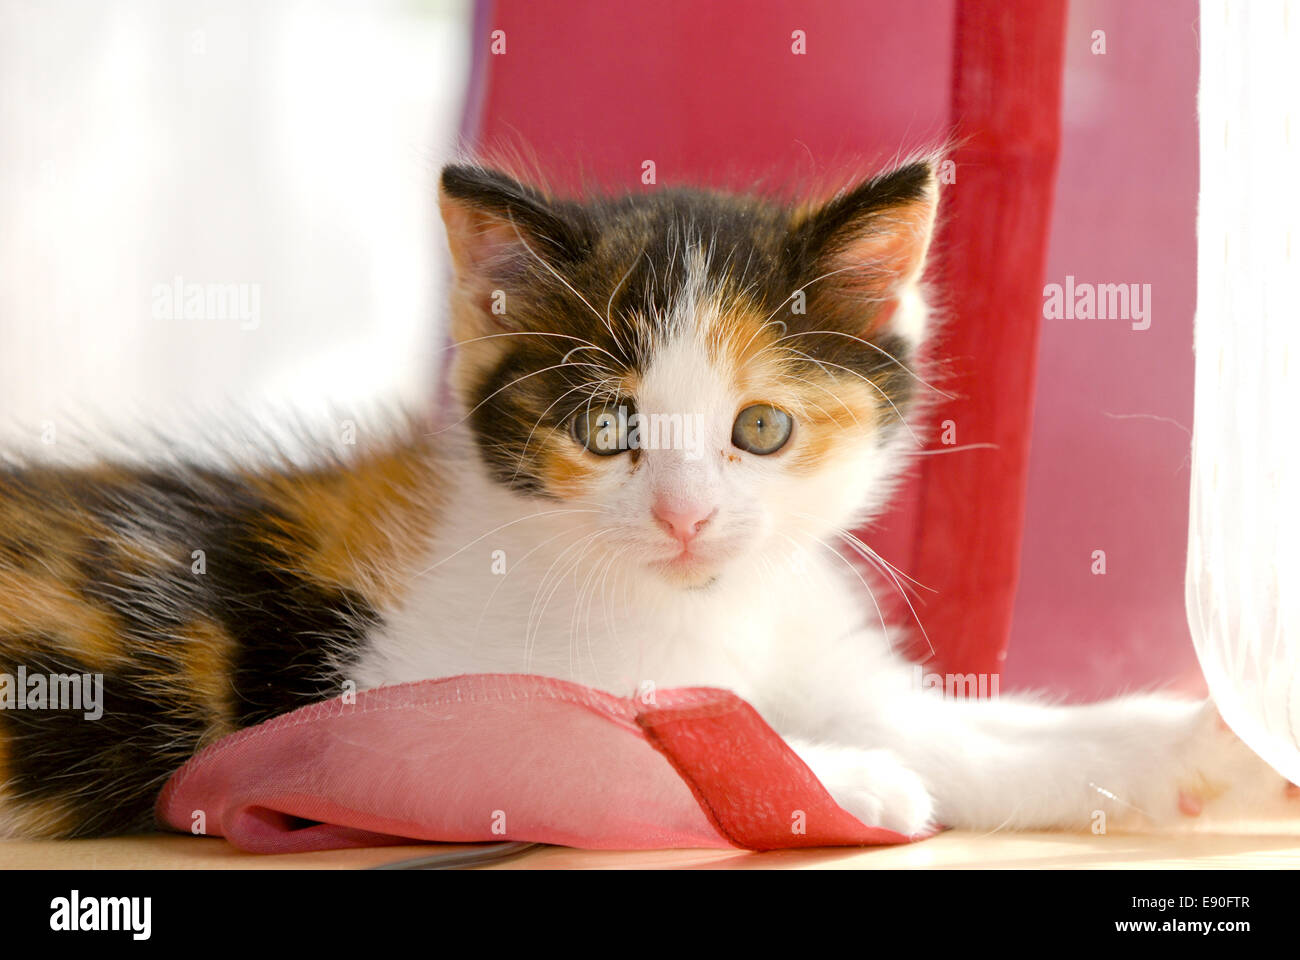 Kitten Stock Photo